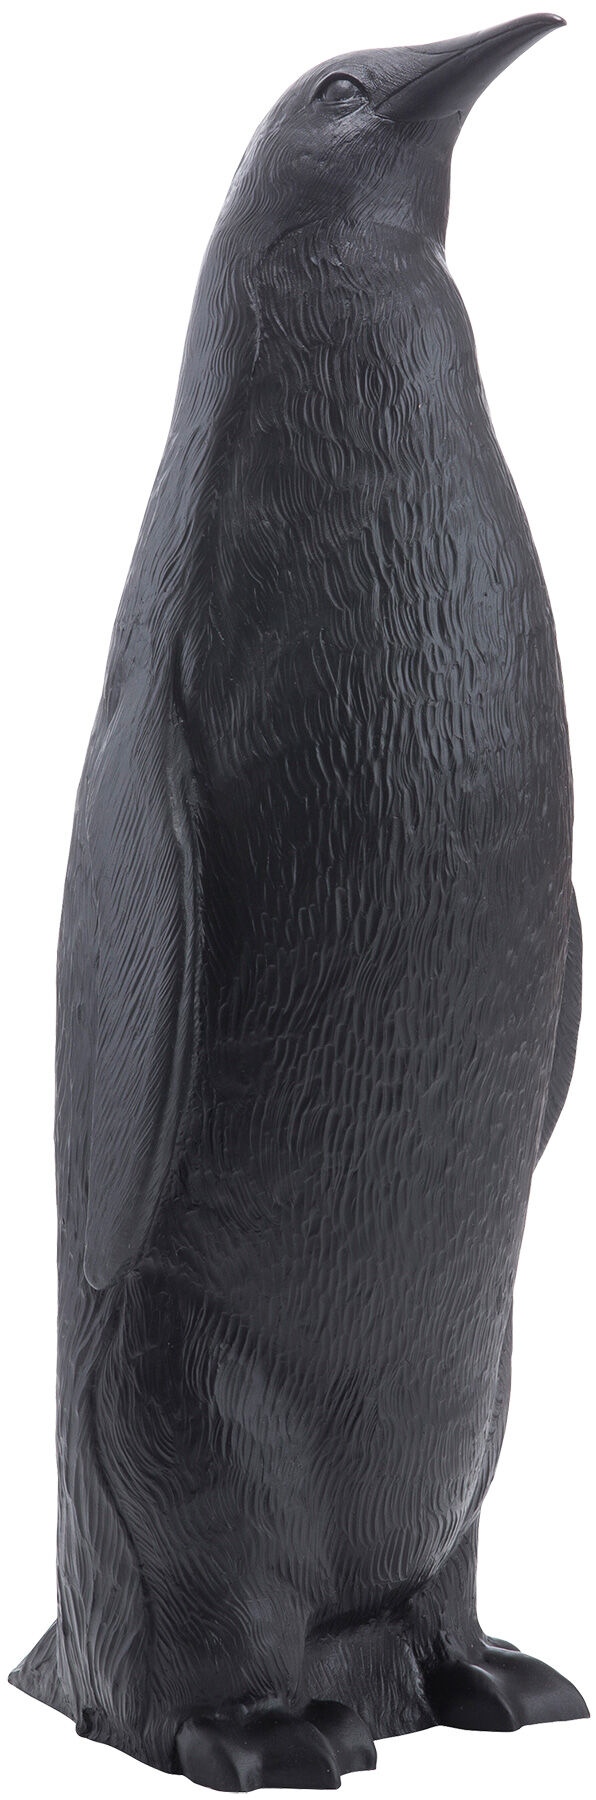 Skulptur "Pinguin II aufrecht" (2006), schwarze Version von Ottmar Hörl